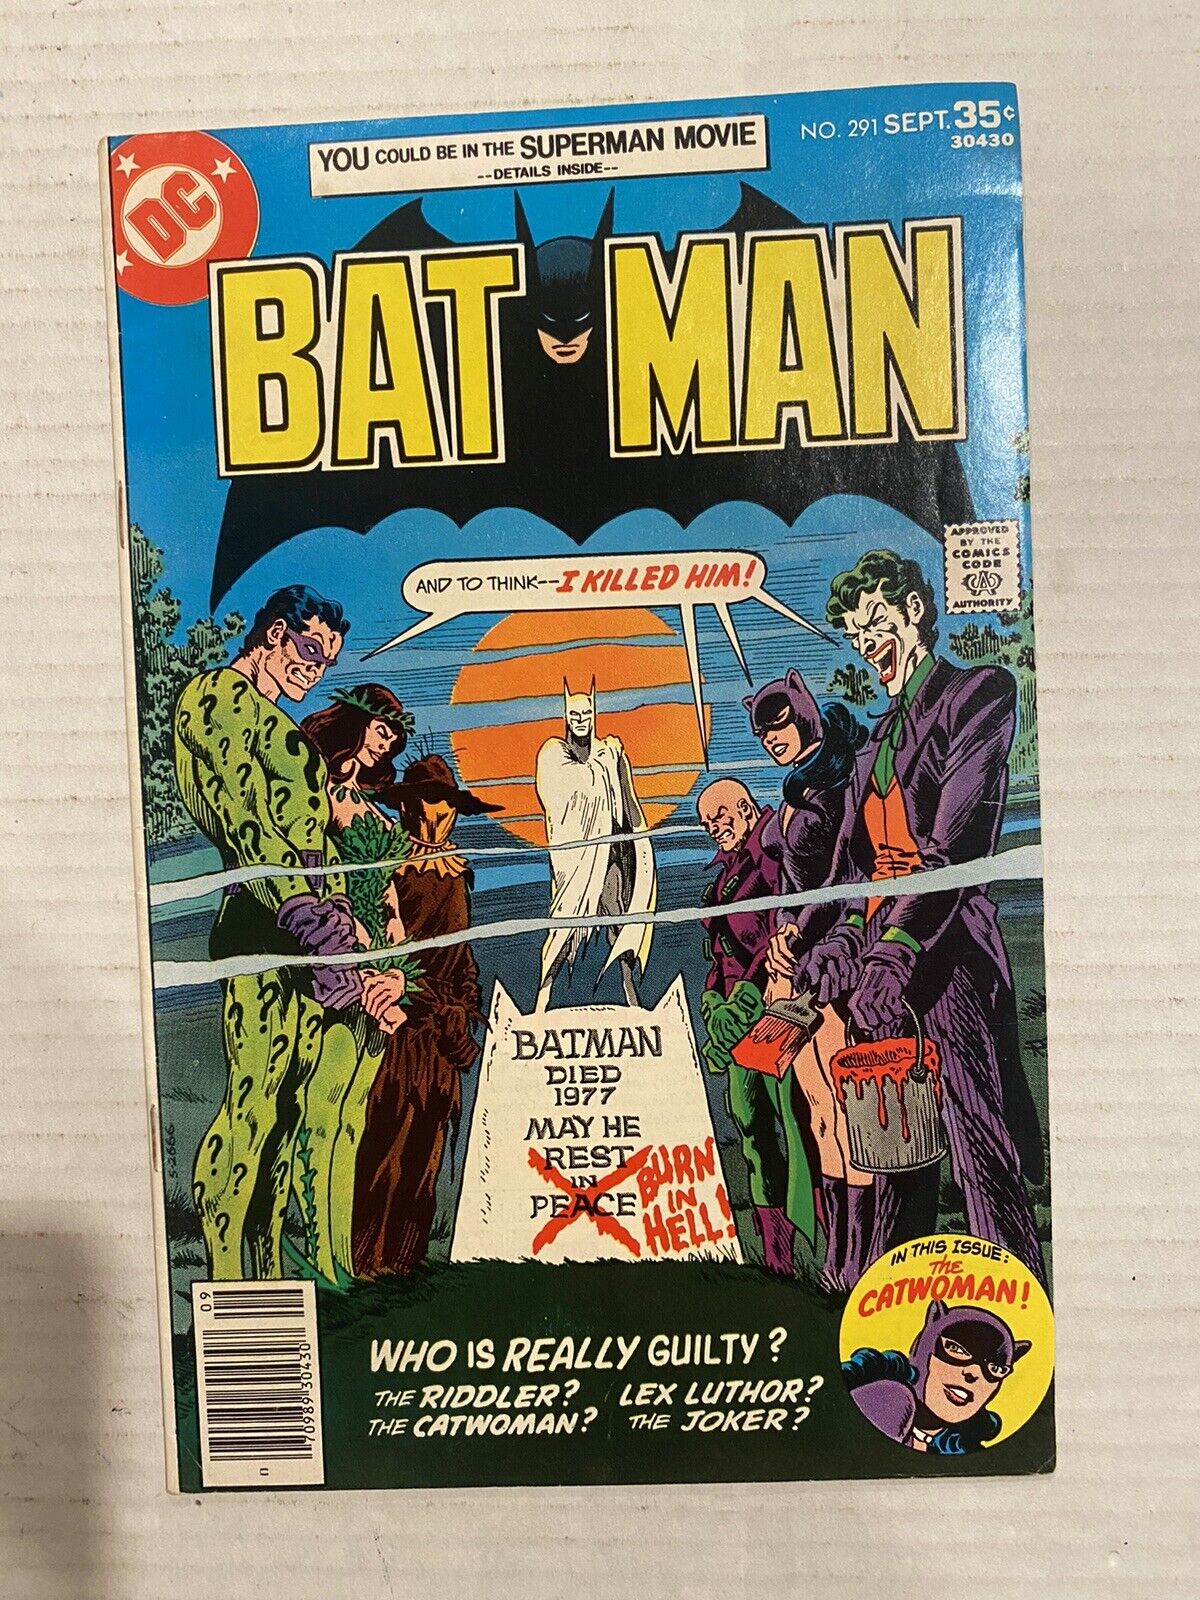 1977 Batman 291 Joker Riddler Catwoman Poison Ivy Scarecrow Cover Newsstand